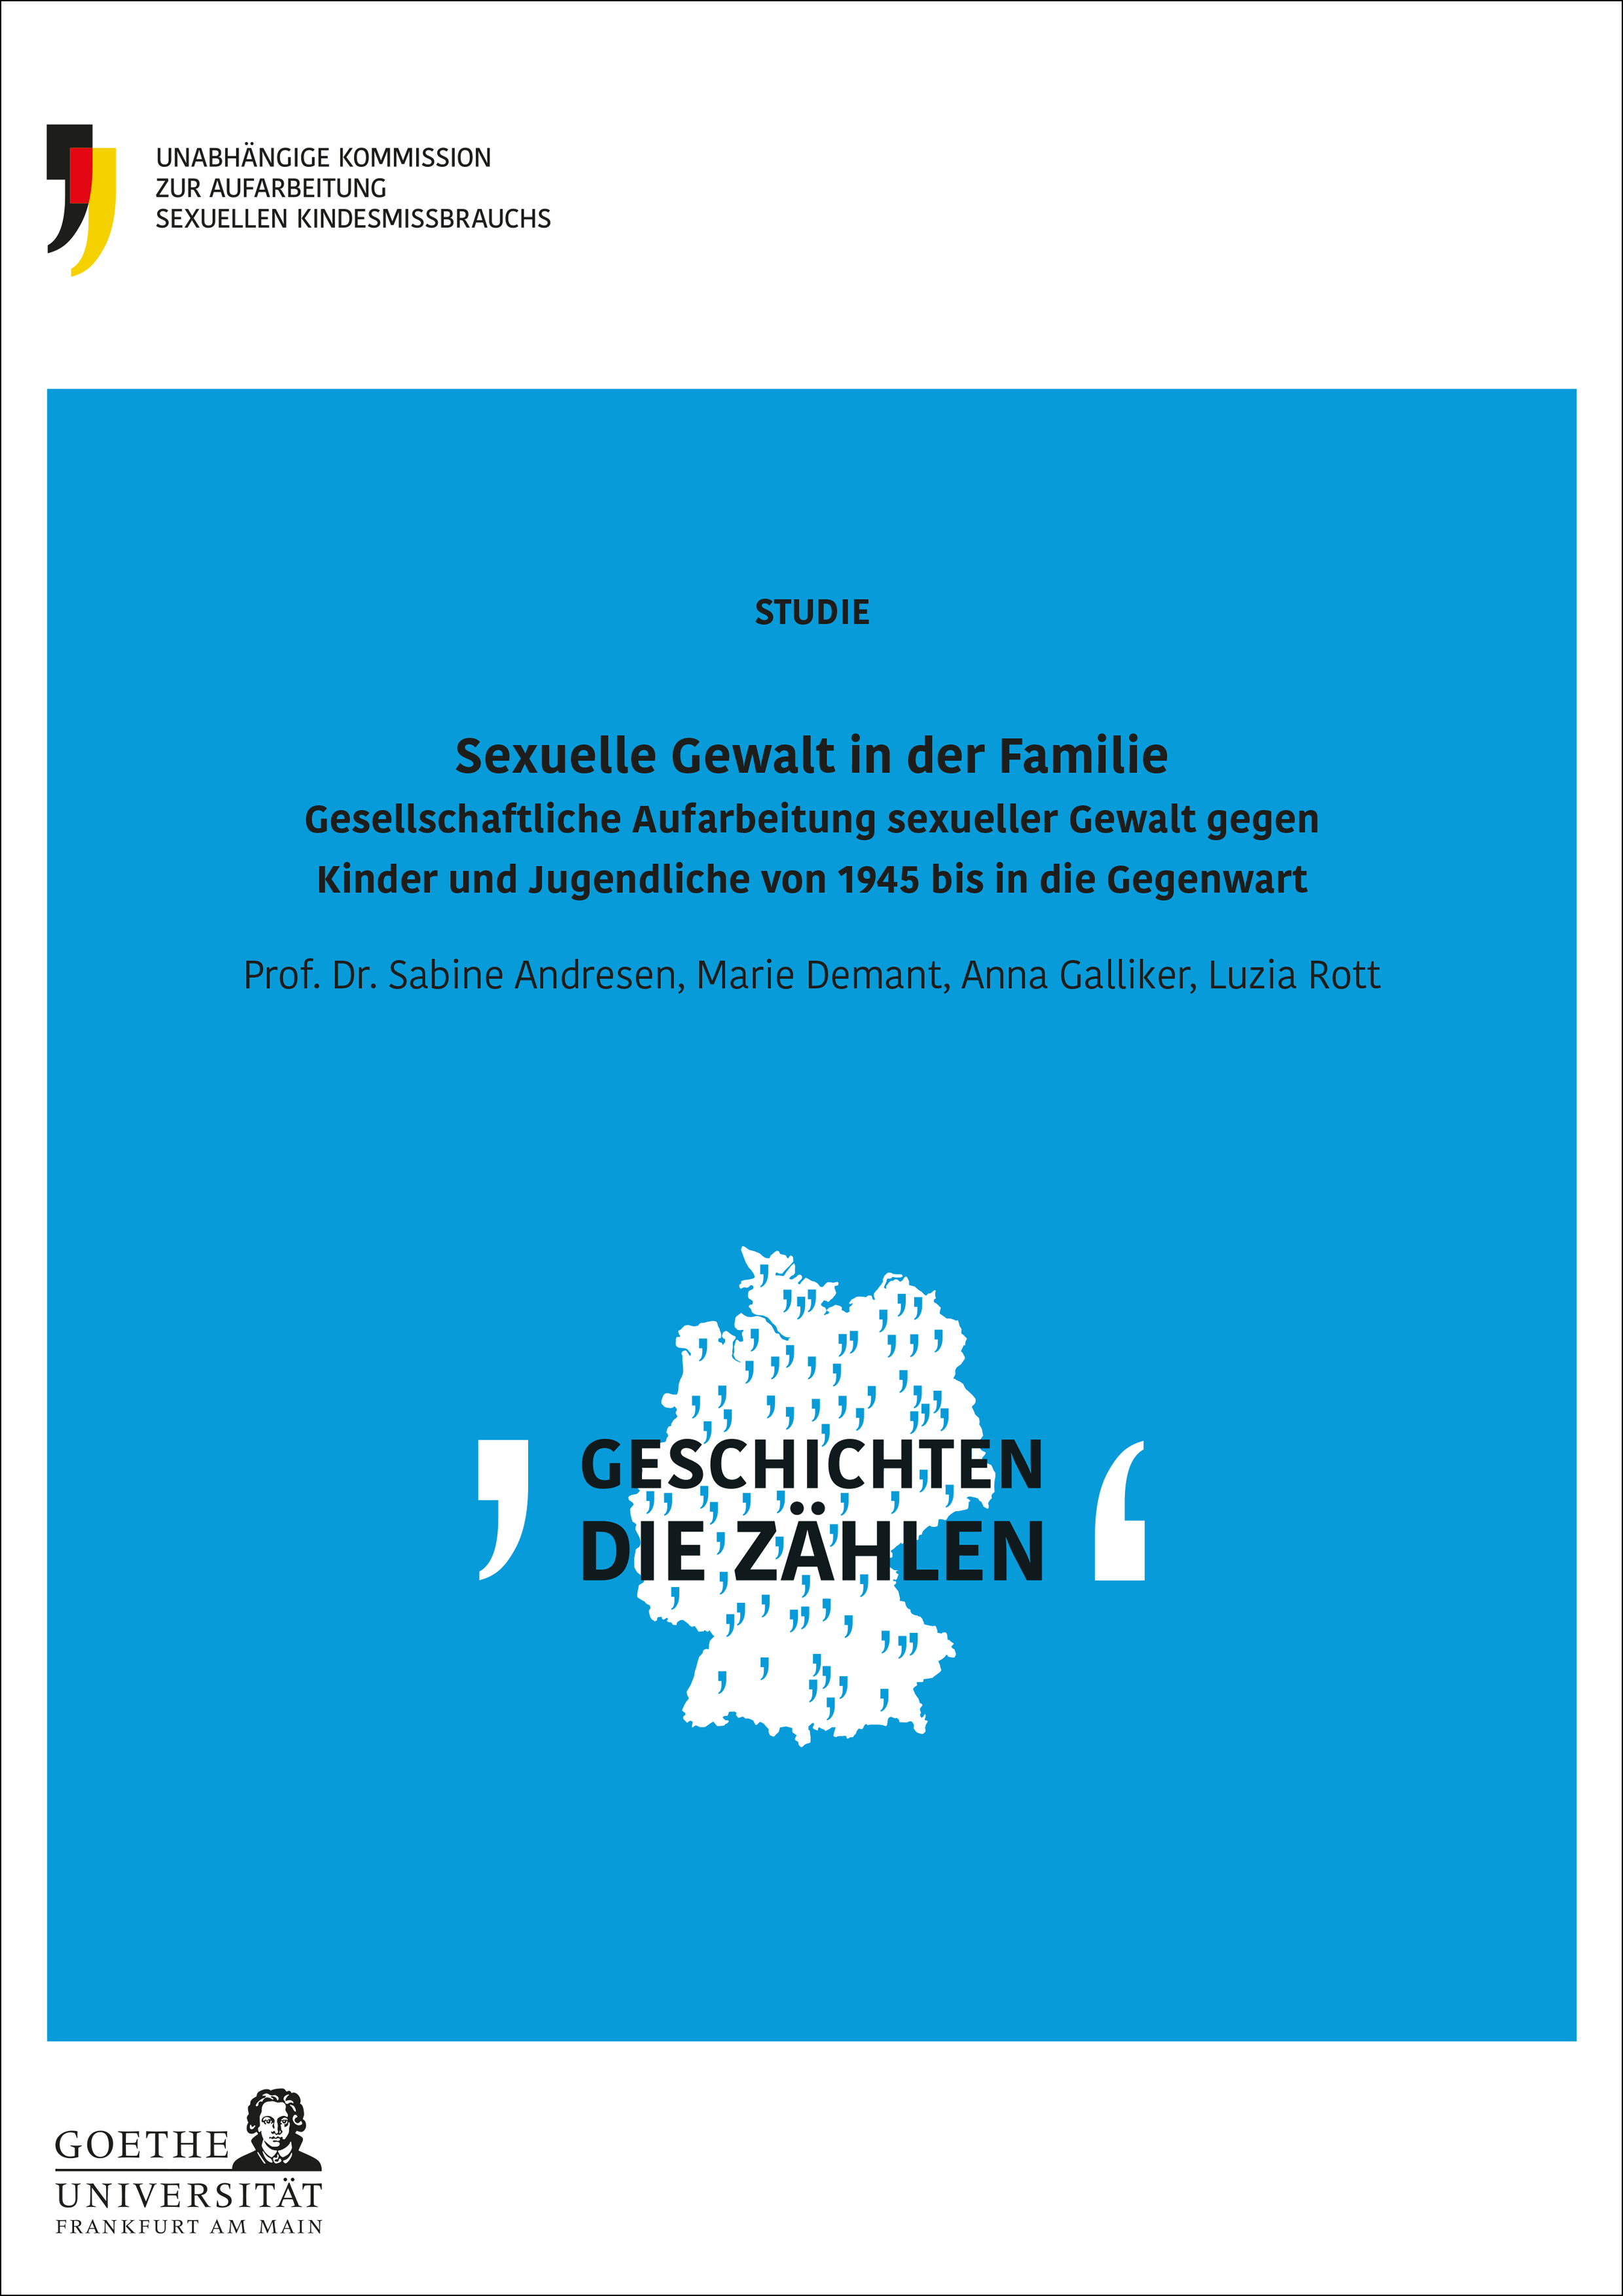 Umschlag der Studie "Sexuelle Gewalt in der Familie". Auf einem blauen Hintergrund ist der Titel der Studie und eine weiße Deutschlandkarte mit vielen Anführungszeichen und dem Schriftzug Geschichten die zählen.